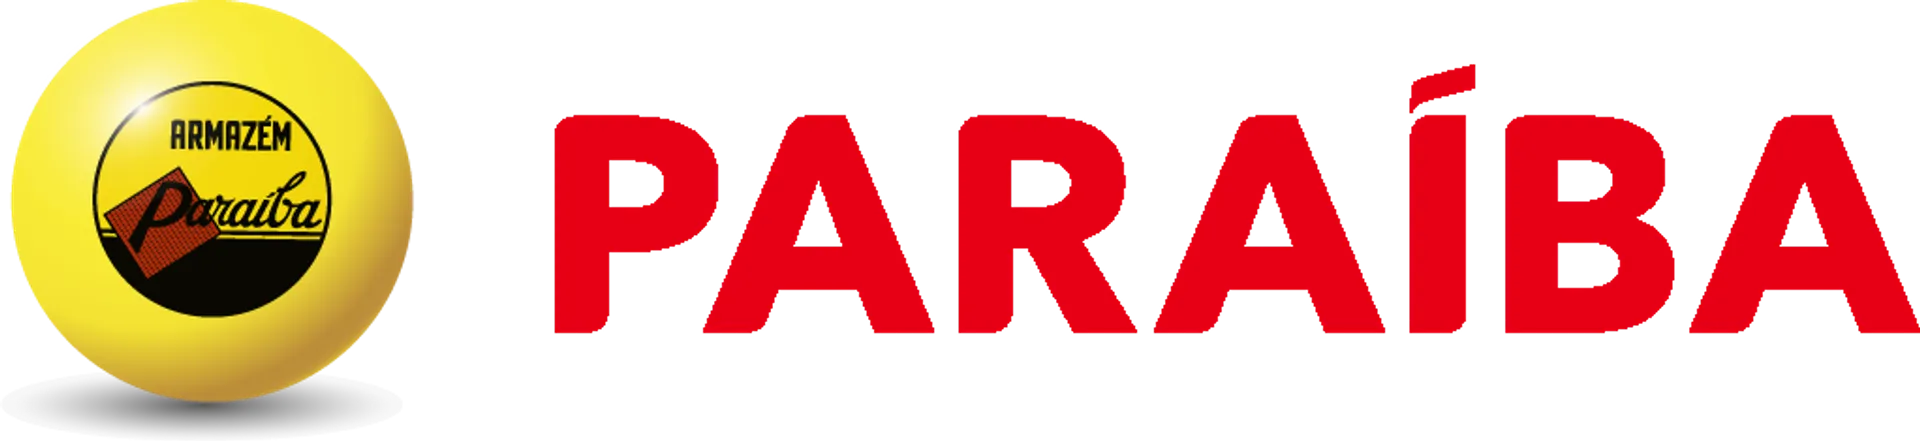 ARMAZÉM PARAÍBA logo